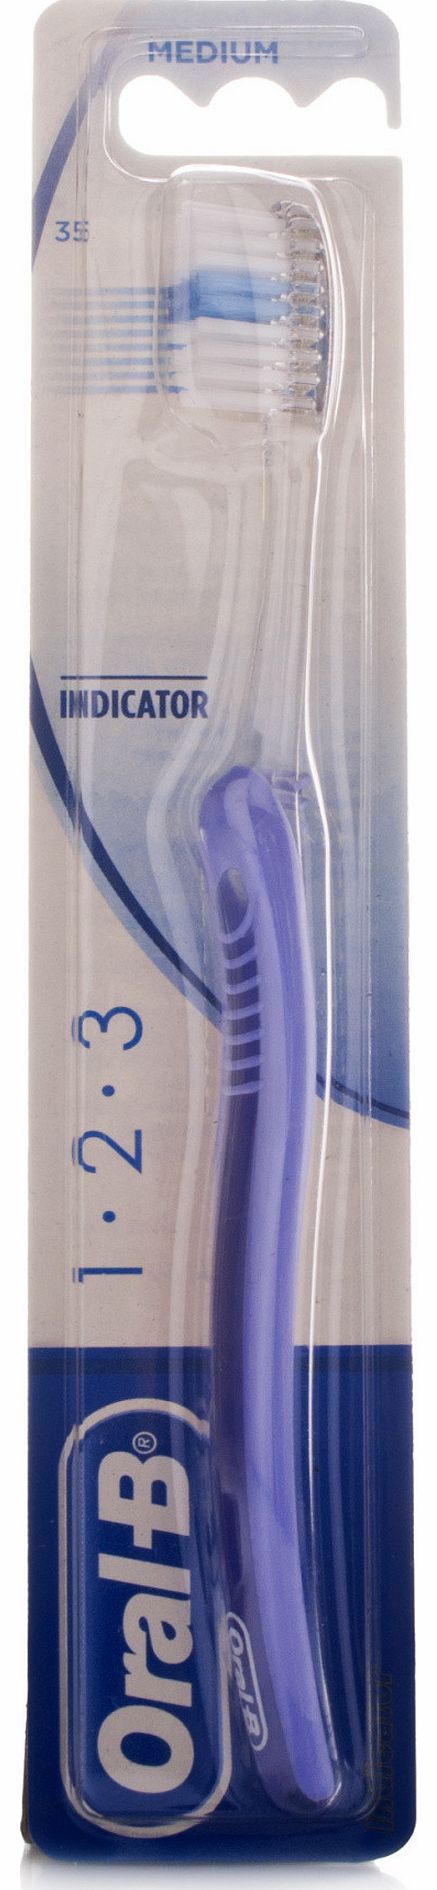 Oral B Oral-B IndicatorToothbrush 35